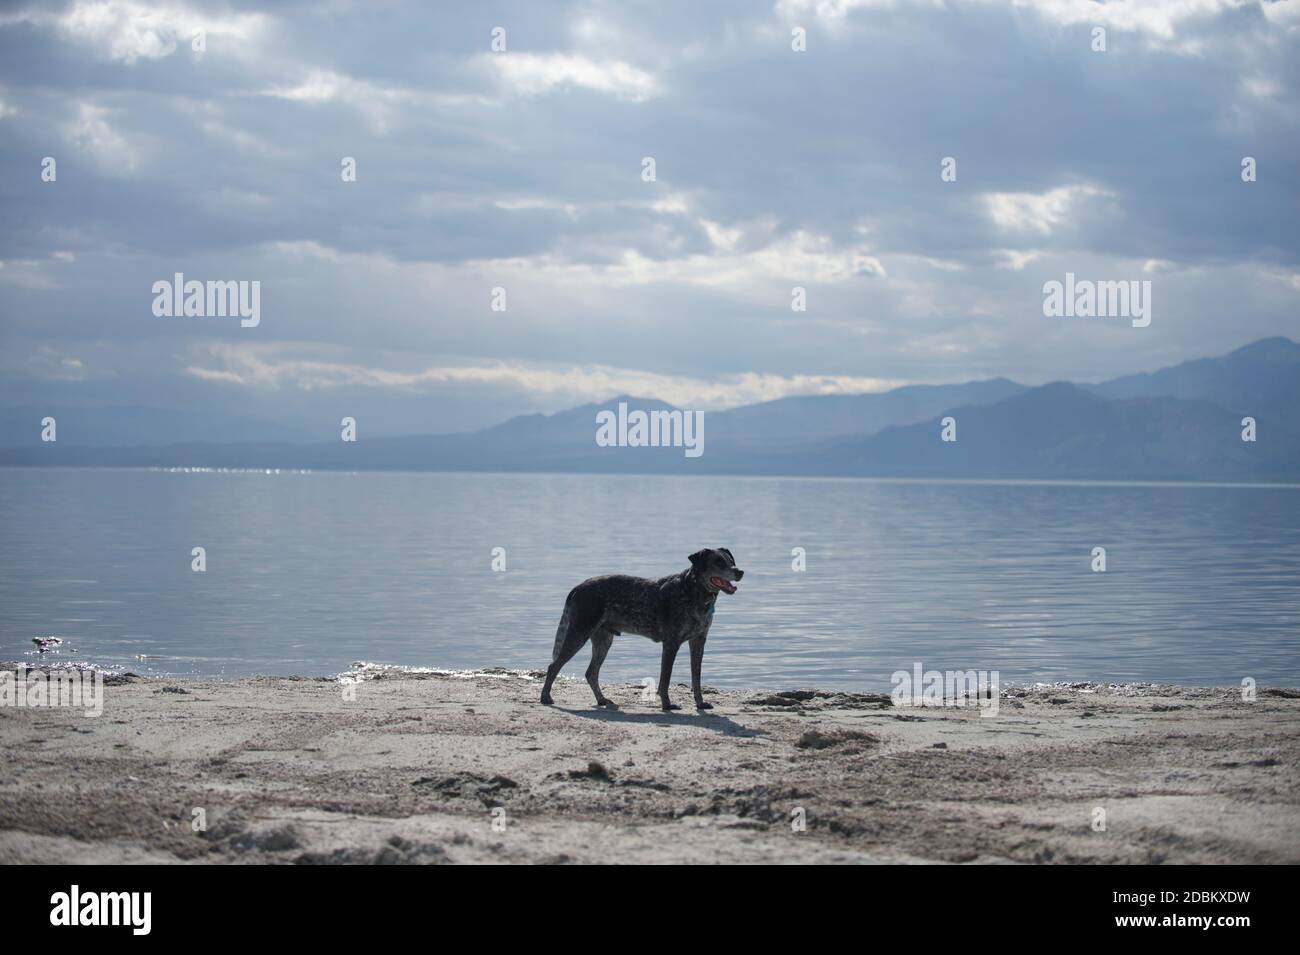 Australian Shepard standing on lakeshore, California, USA Stock Photo